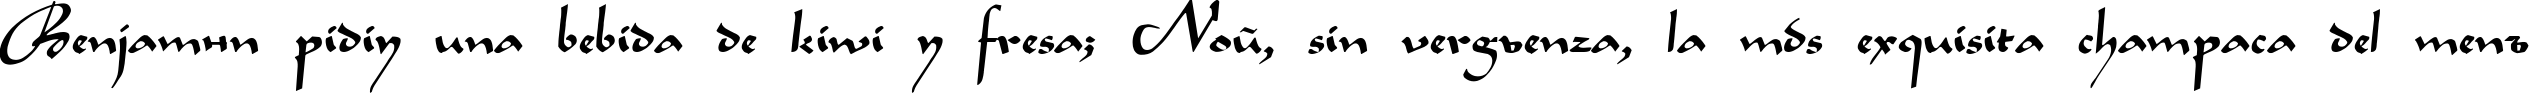 Пример написания шрифтом LegendeC Plain текста на испанском